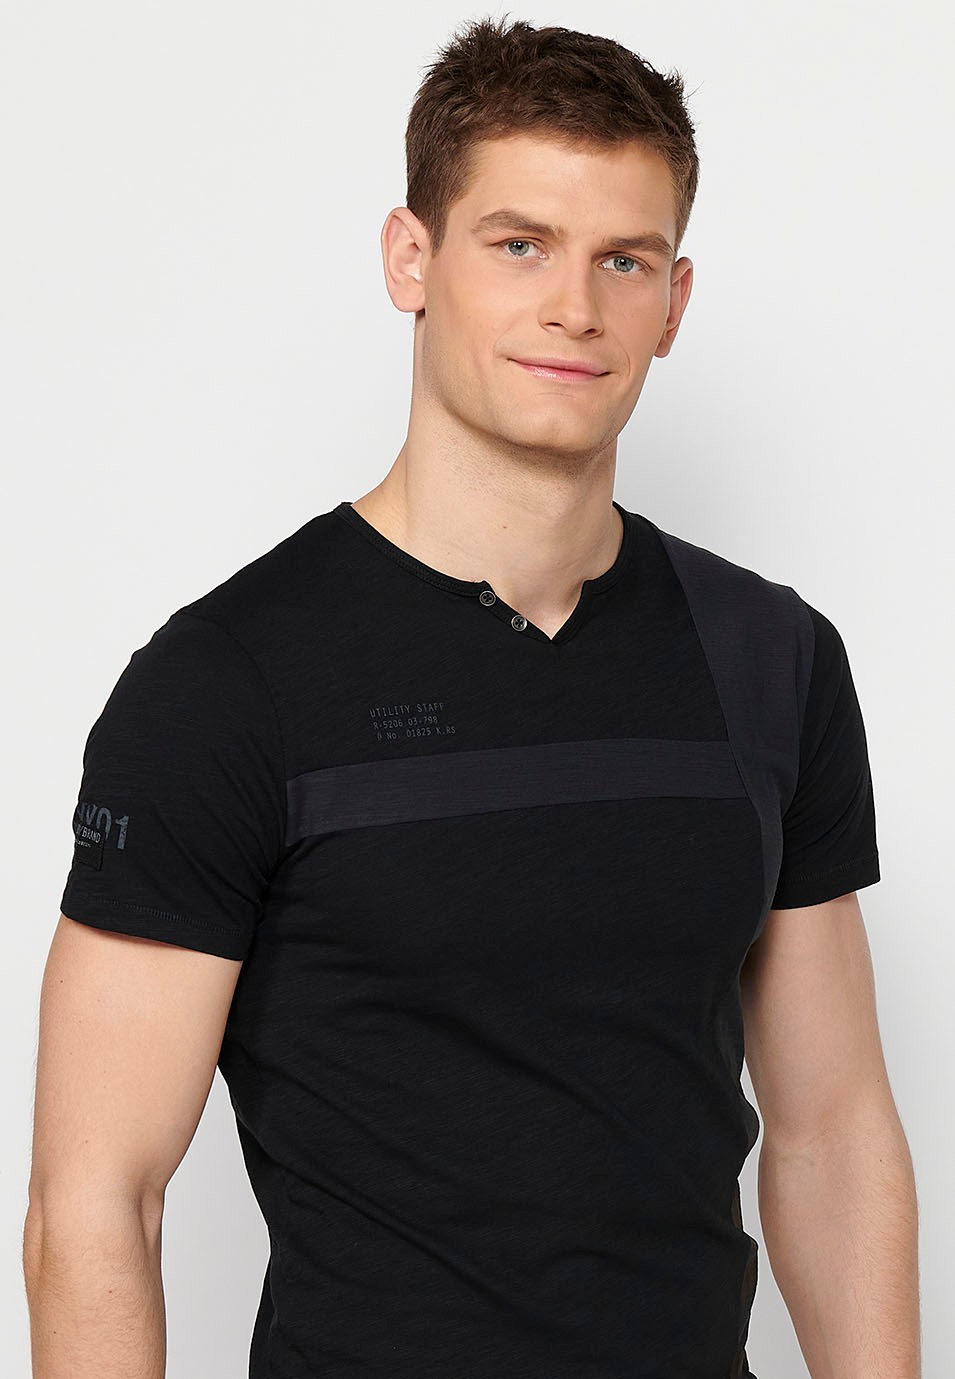 Schwarzes Herren-T-Shirt aus Baumwolle mit kurzen Ärmeln, Rundhalsausschnitt und Knopfleiste